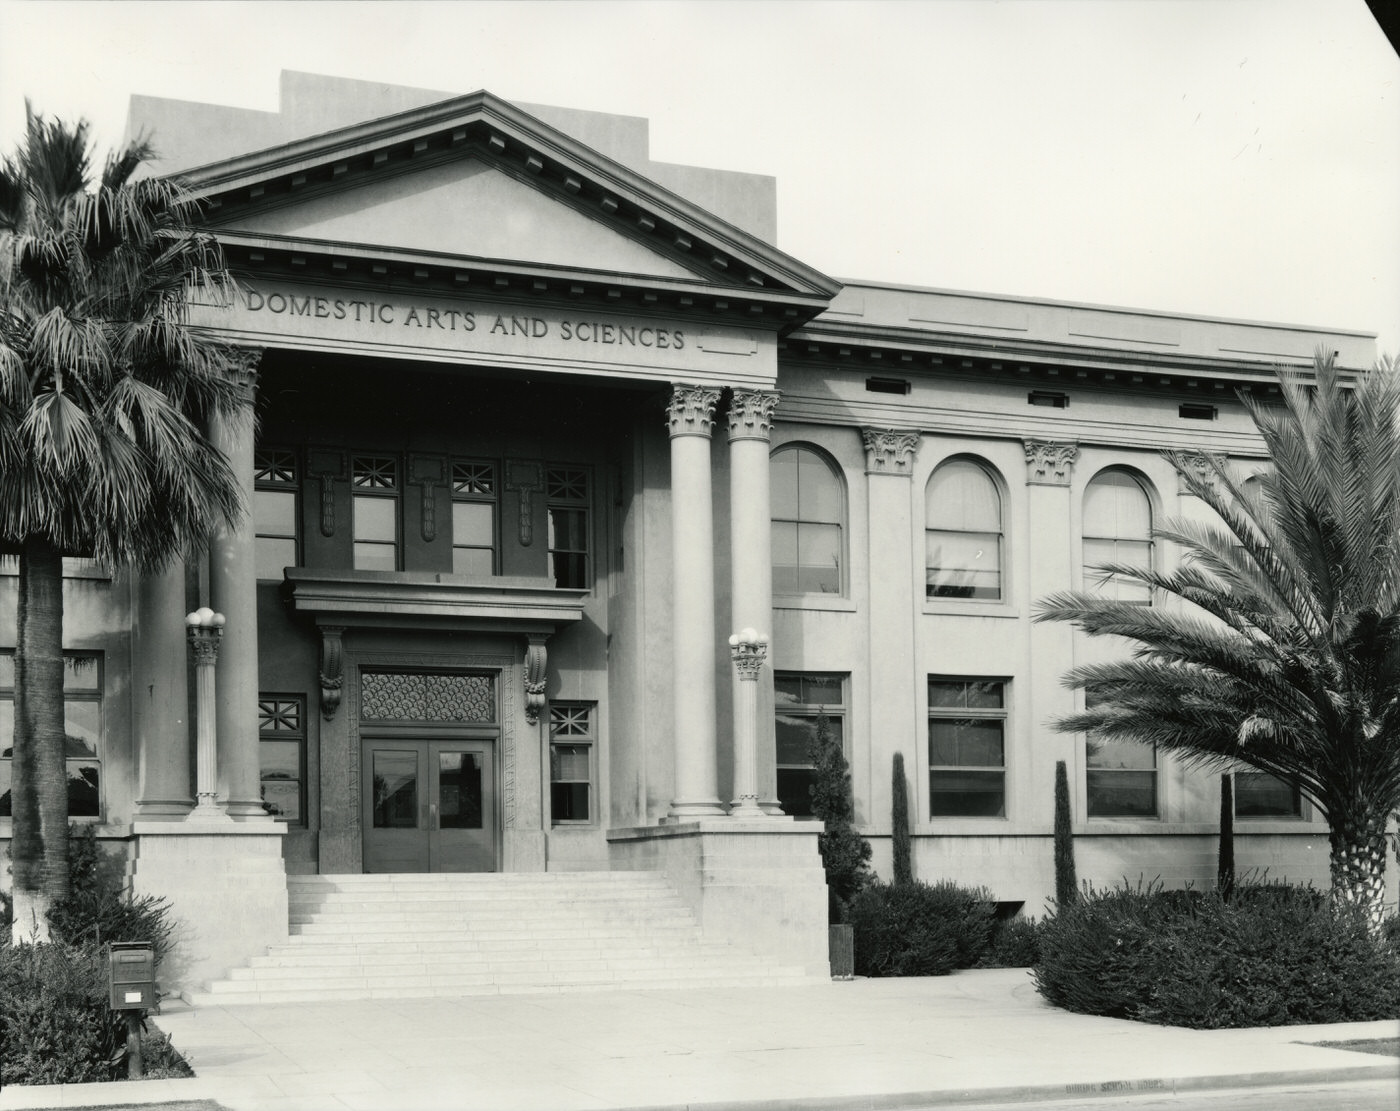 Phoenix Union High School Exterior, 1930s. Phoenix Union High School was located on Van Buren Rd. in Phoenix.